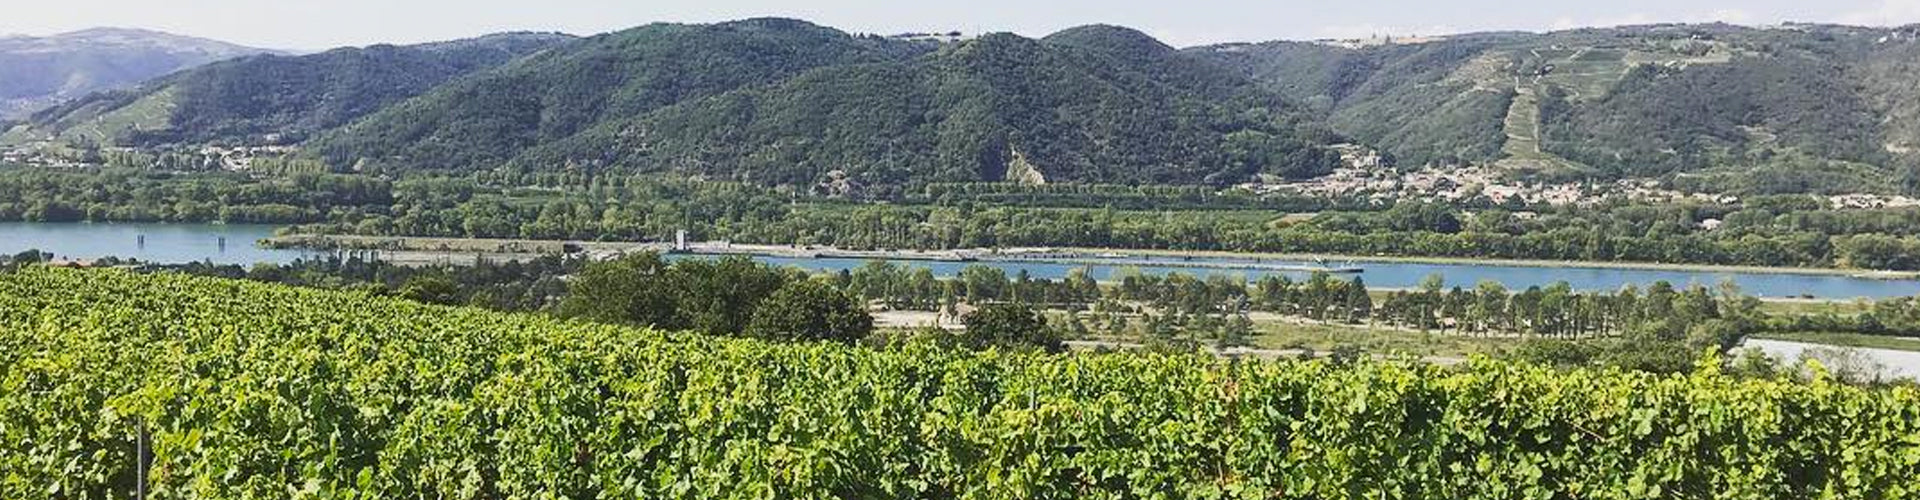 Rhône Valley Vineyards in France